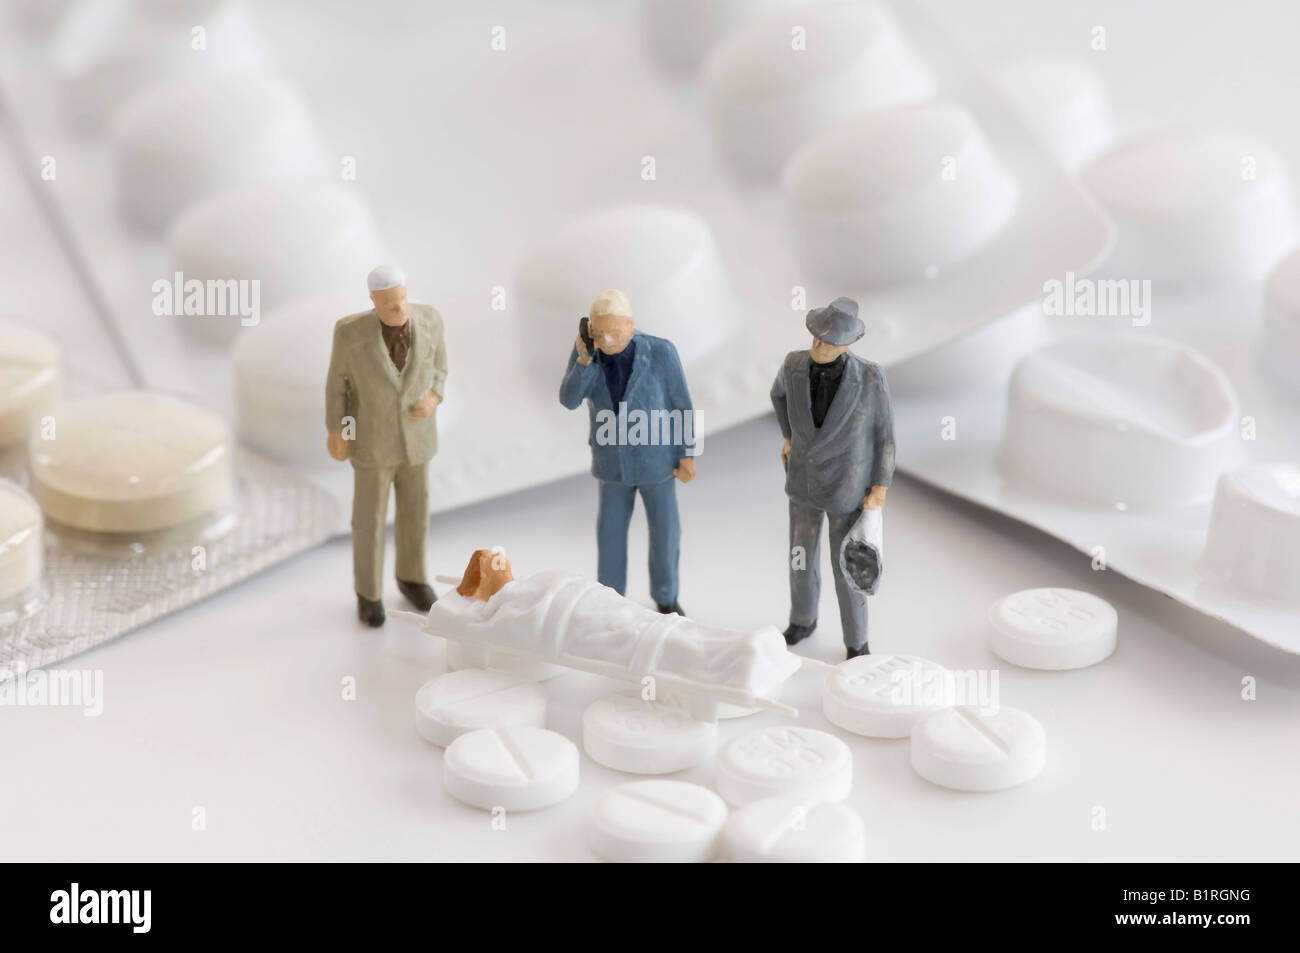 Tabletten, Blisterverpackungen und drei Miniatur-Männer stehen neben einer Frau auf einer Bahre, symbolische Foto Stockfoto